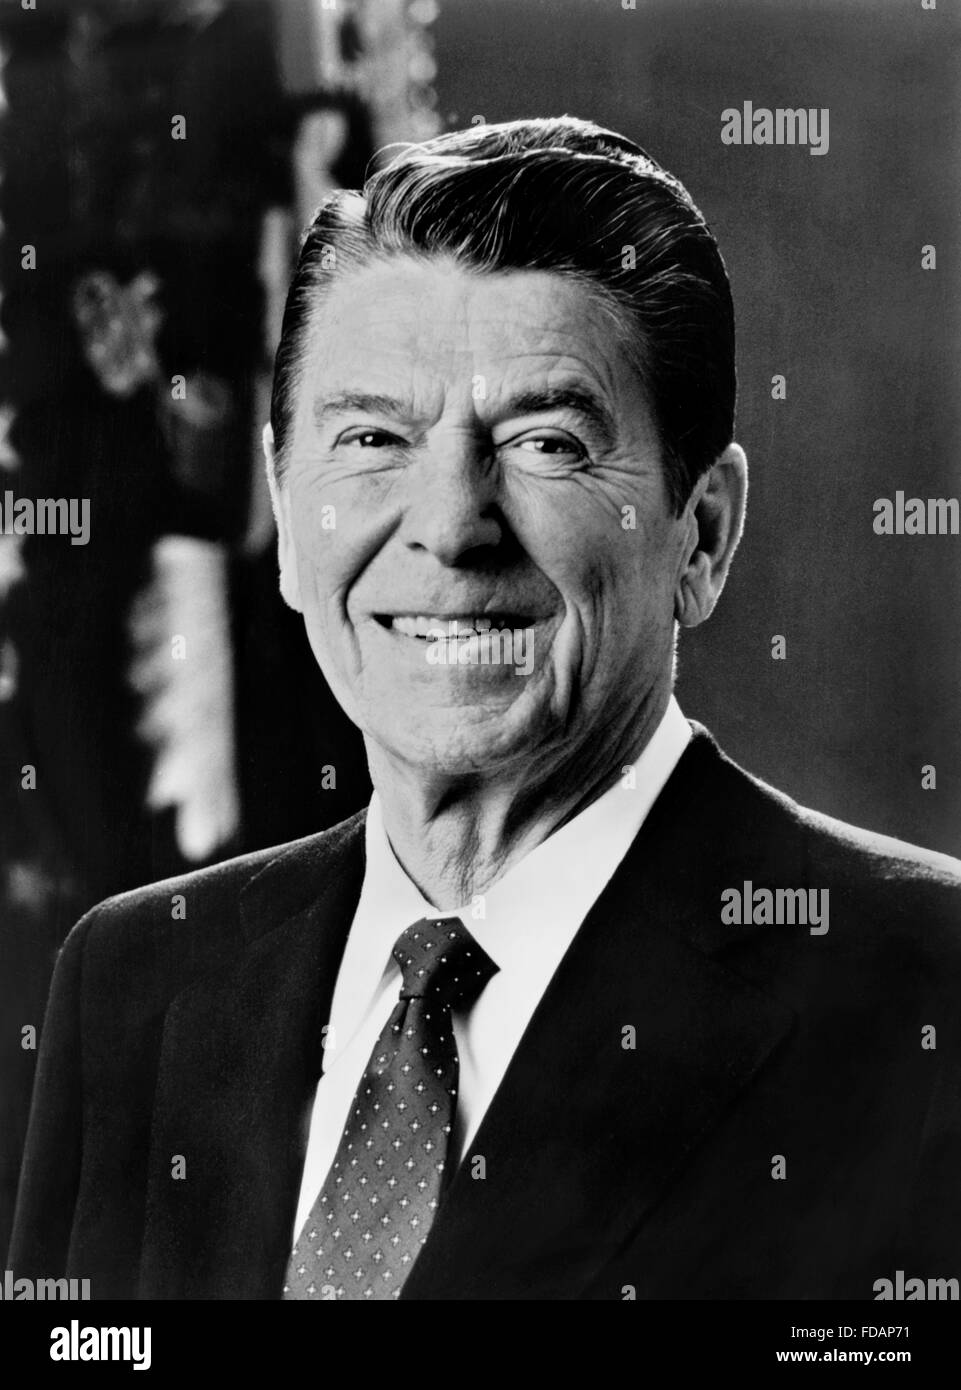 Ronald Reagan. Portrait officiel de la Maison Blanche de Ronald Reagan, le 40e Président des Etats-Unis, c.1981-1983 Banque D'Images